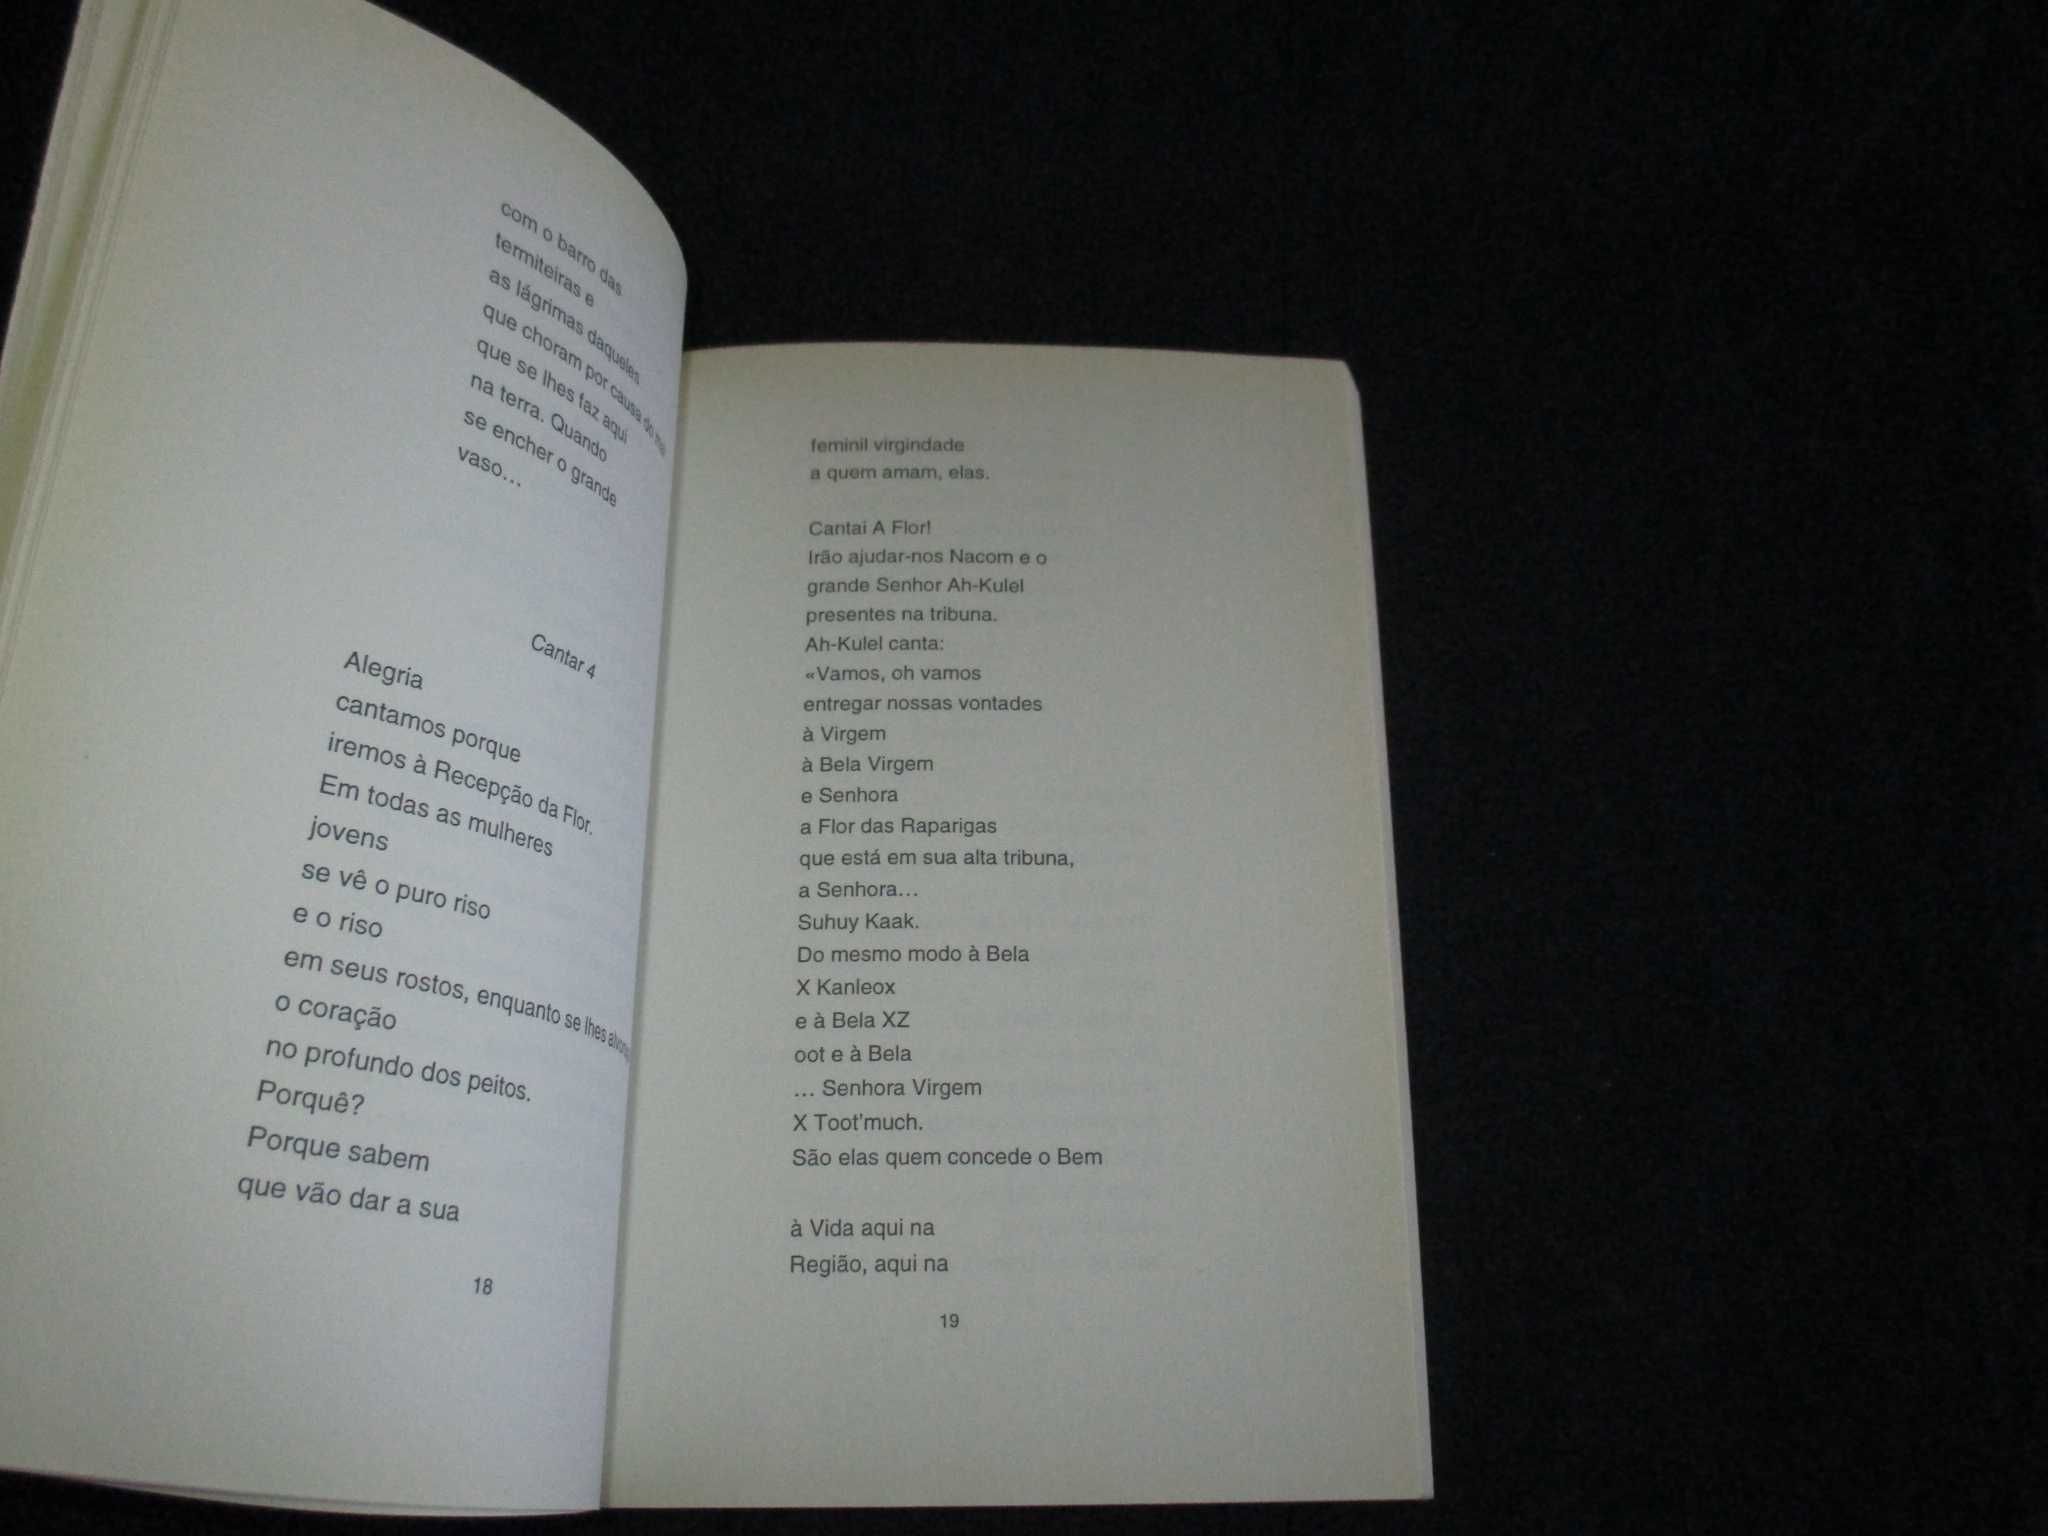 Livro Ouolof Poemas mudados para português por Herberto Helder